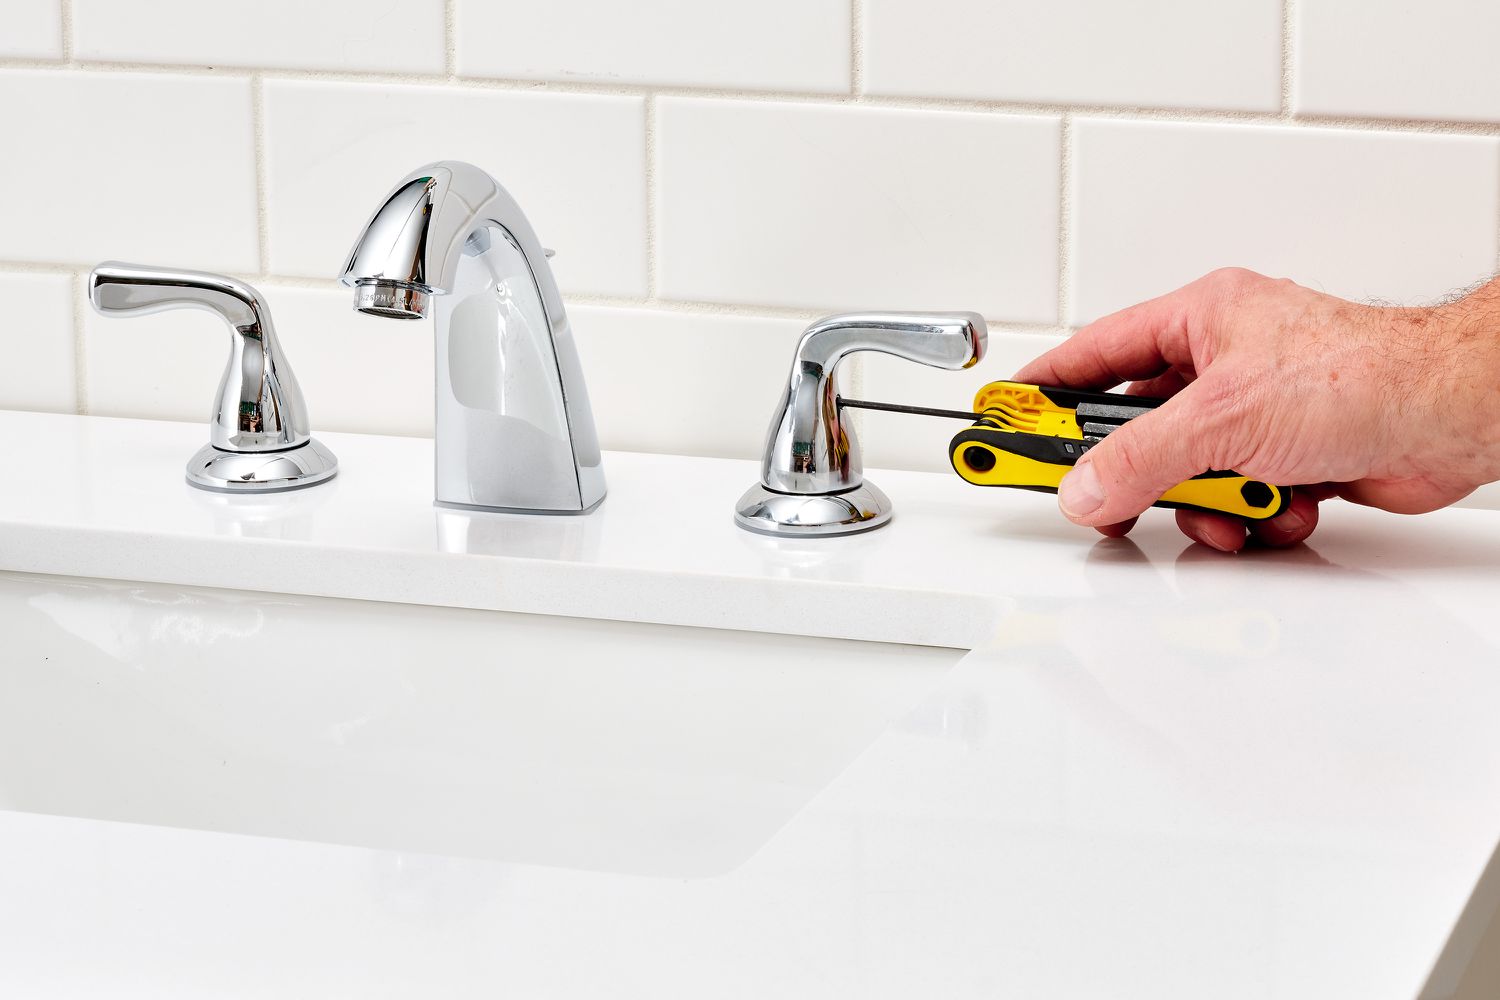 How To Tighten Sink Faucet Handle